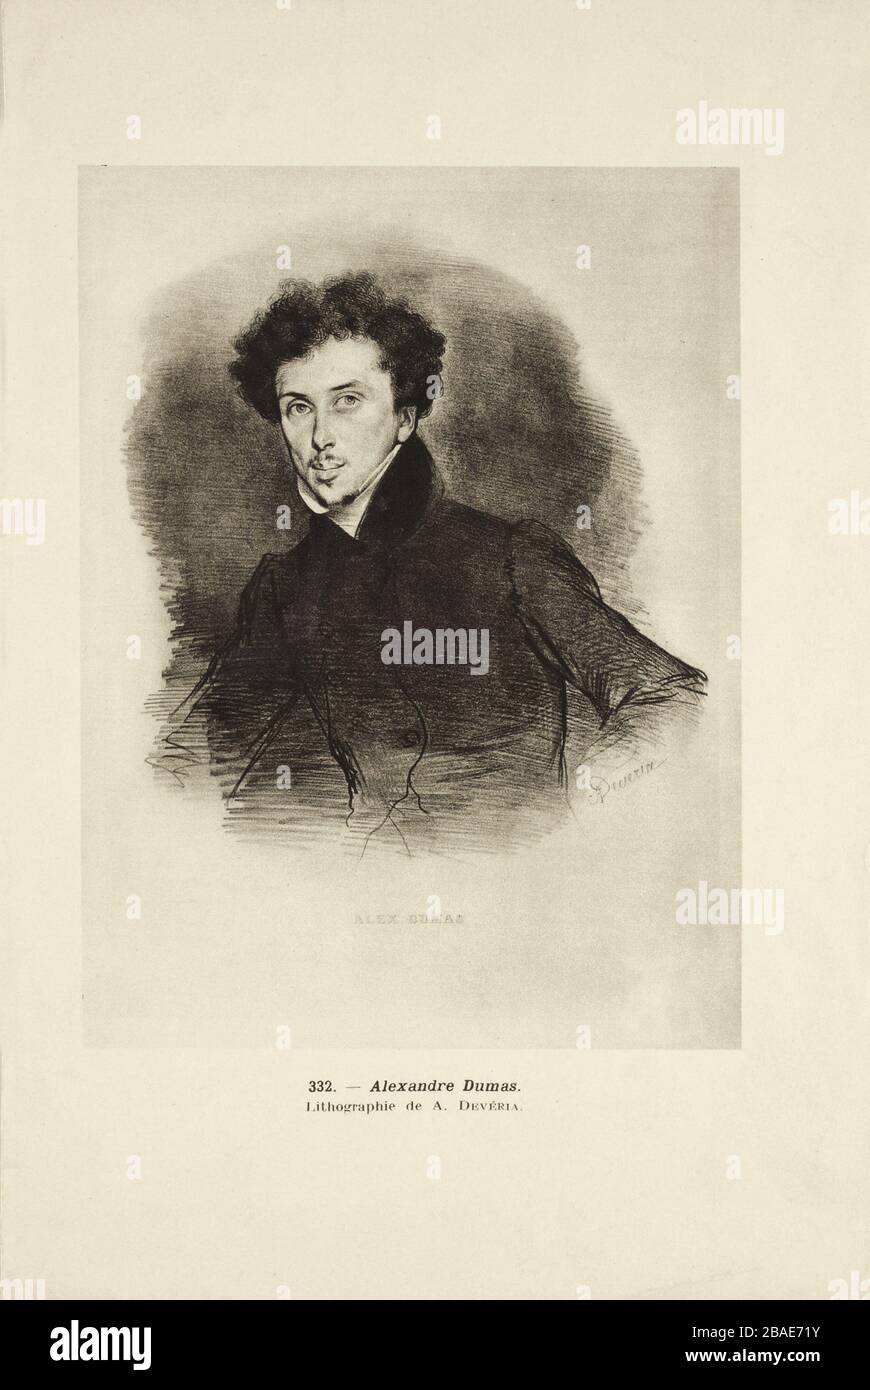 Incisione del giovane Alexandre Dumas fils (1824 – 1895), autore e drammaturgo francese, meglio conosciuto per il romanzo romantico la Dame aux Camélias (la Signora Foto Stock